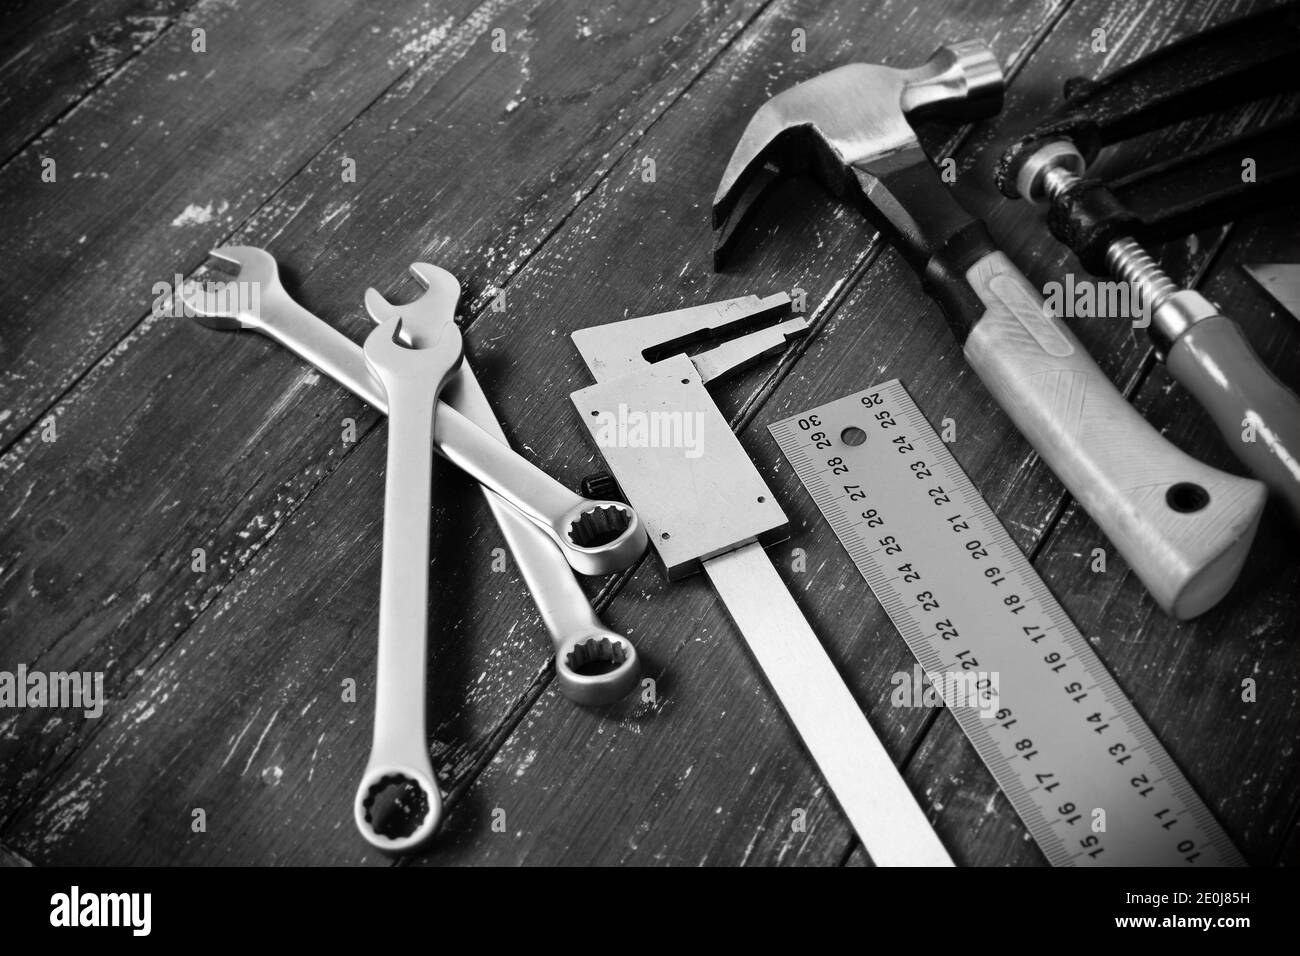 Nahaufnahme Werkzeuge Gebäude und Reparatur Set auf einem hölzernen Hintergrund Monochrom Stockfoto